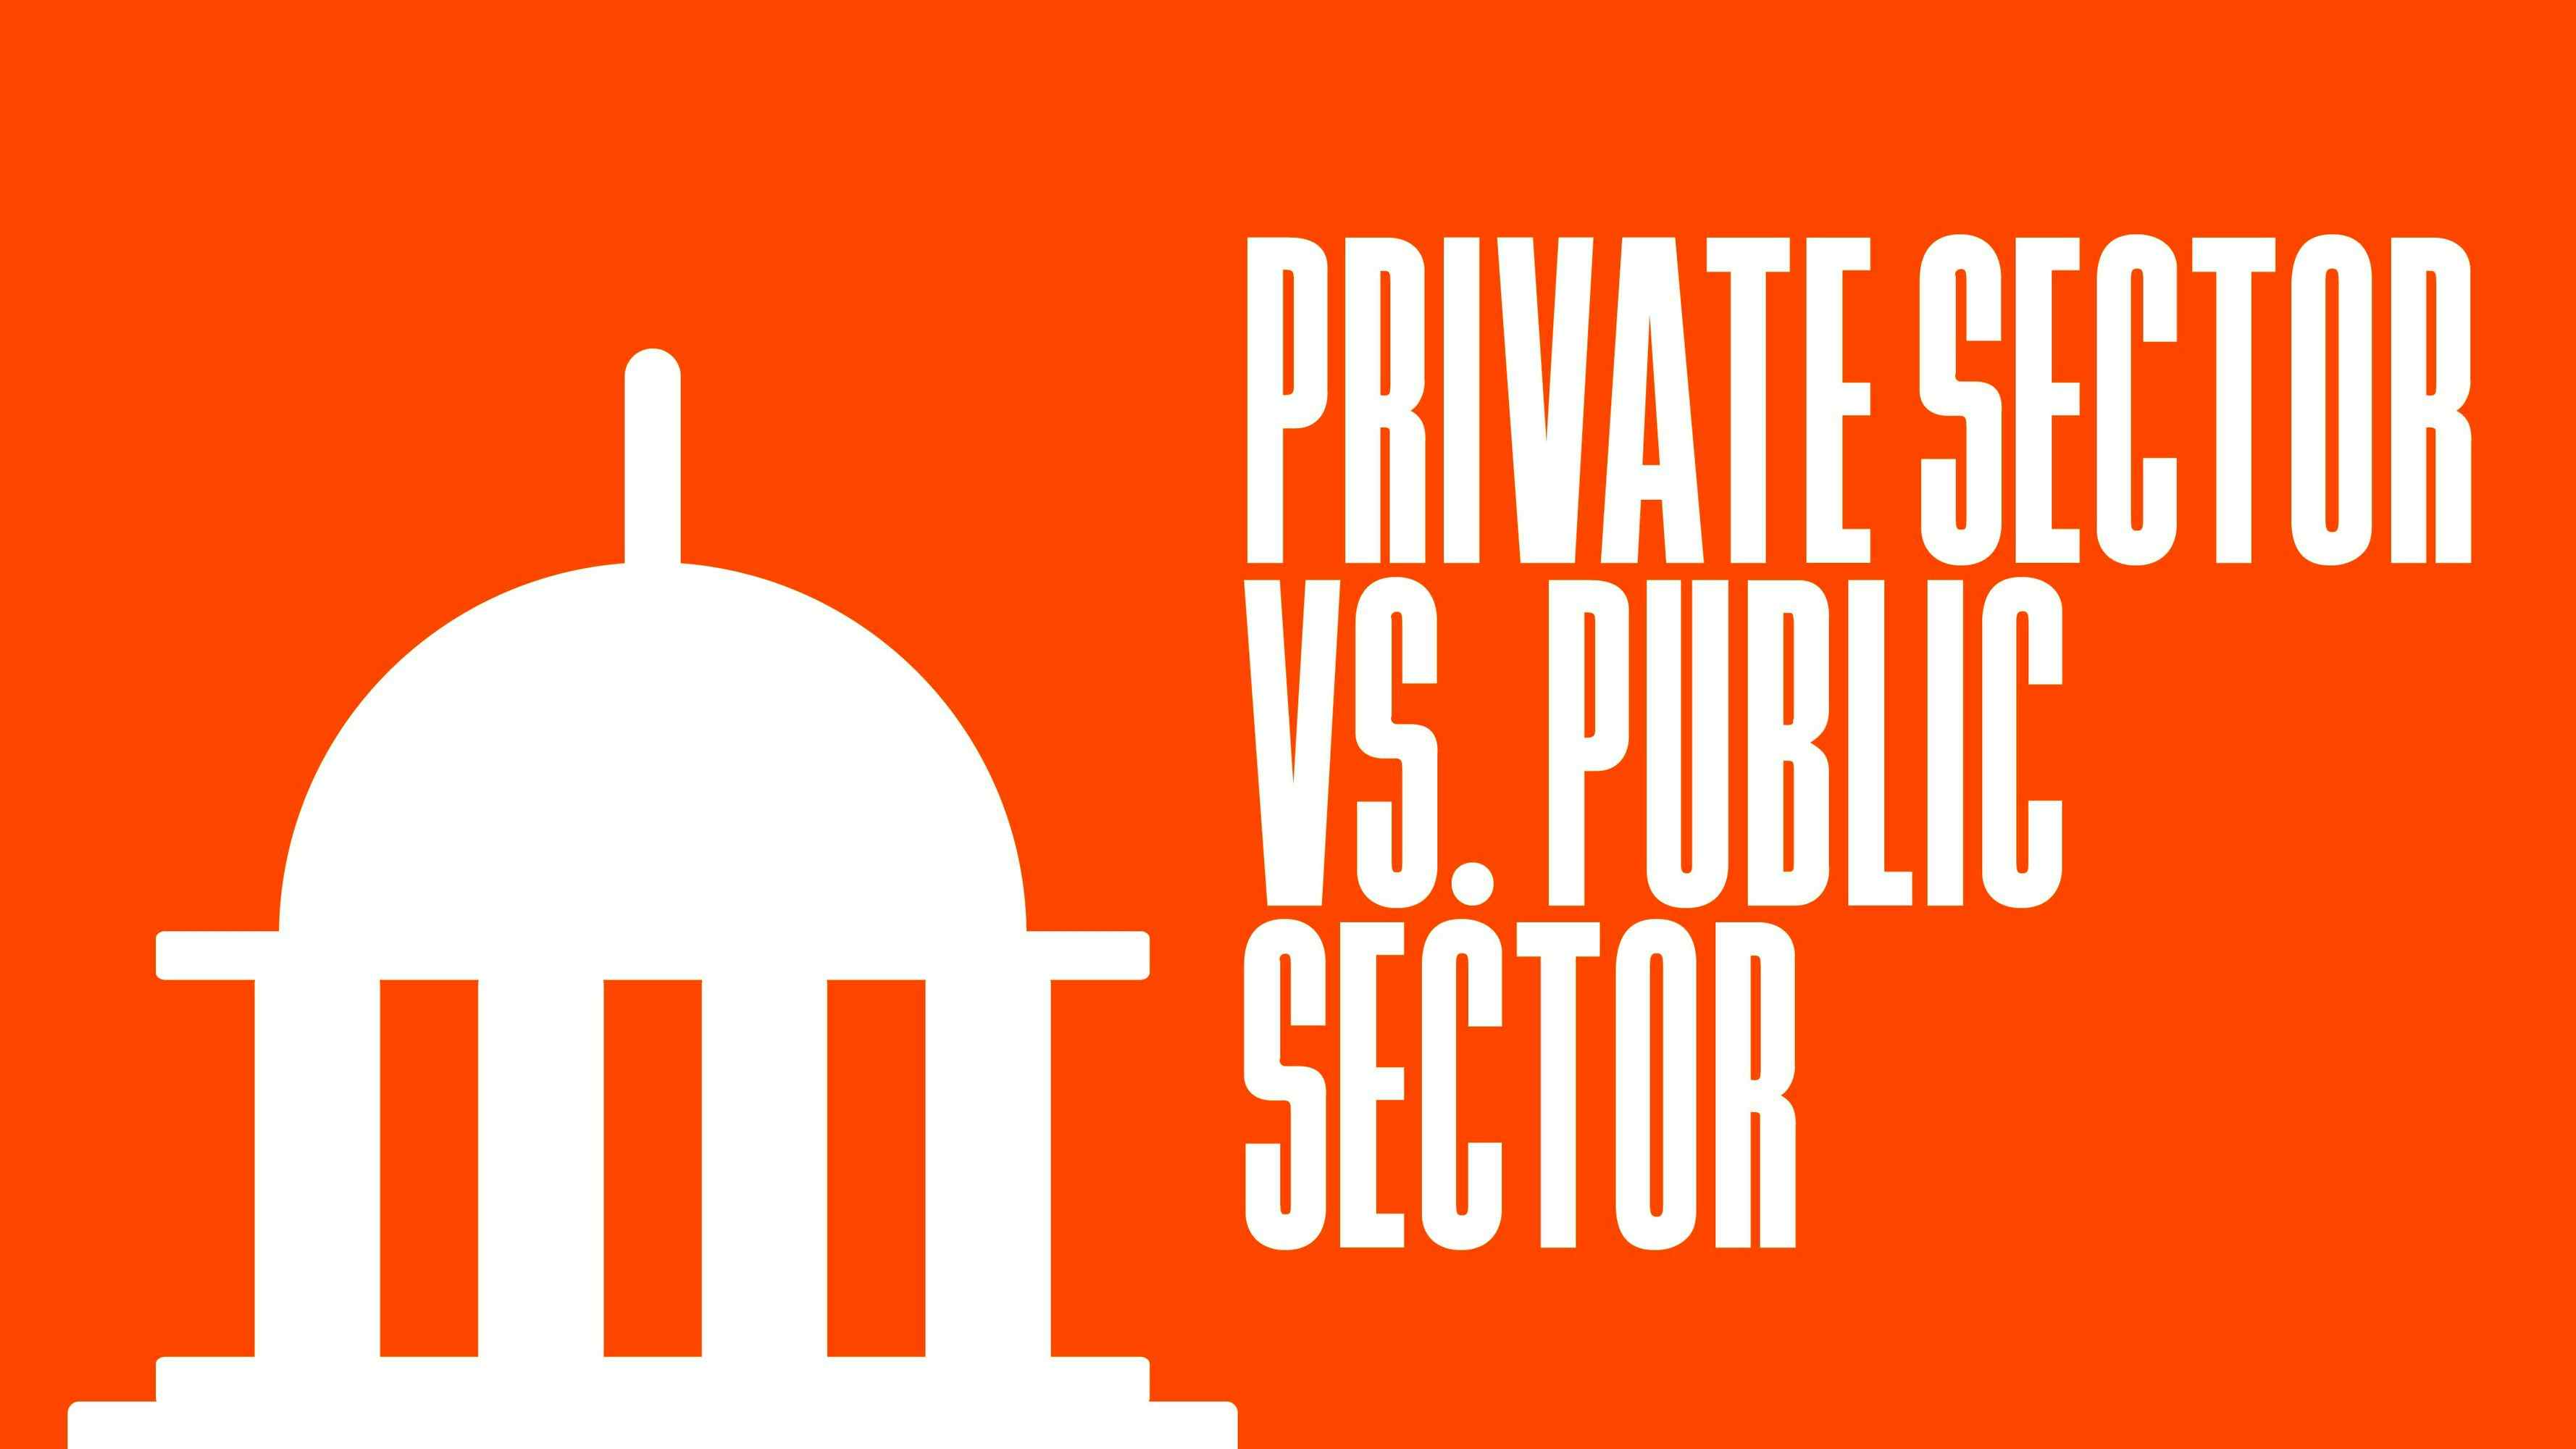 Private Sector vs. Public Sector